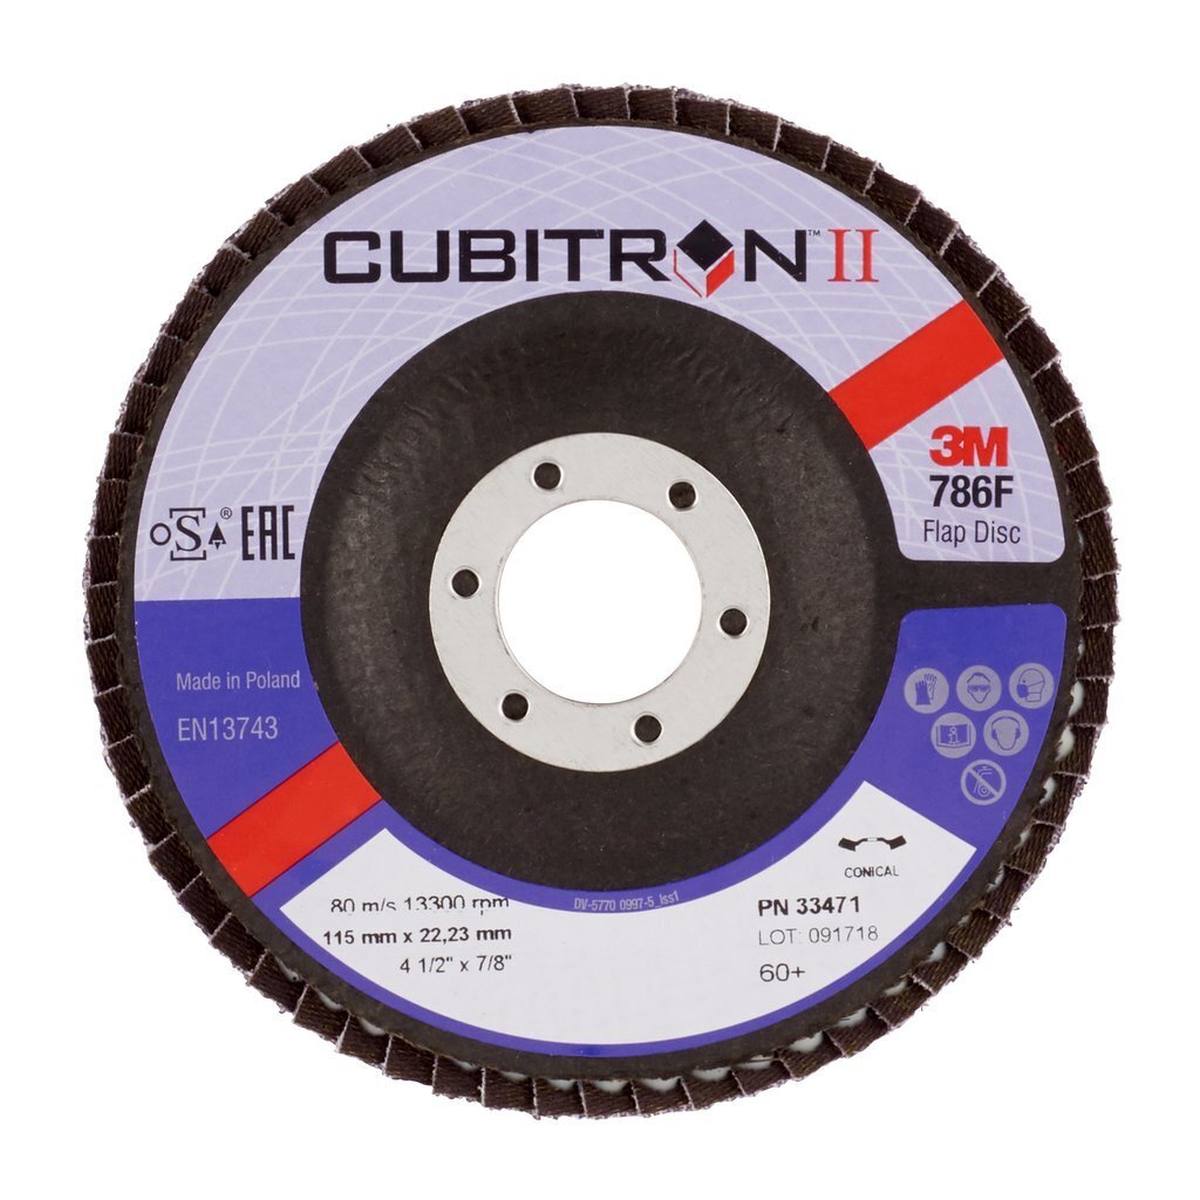 dischi lamellari 3M Cubitron II, 115 mm, 60+, foro 22 mm